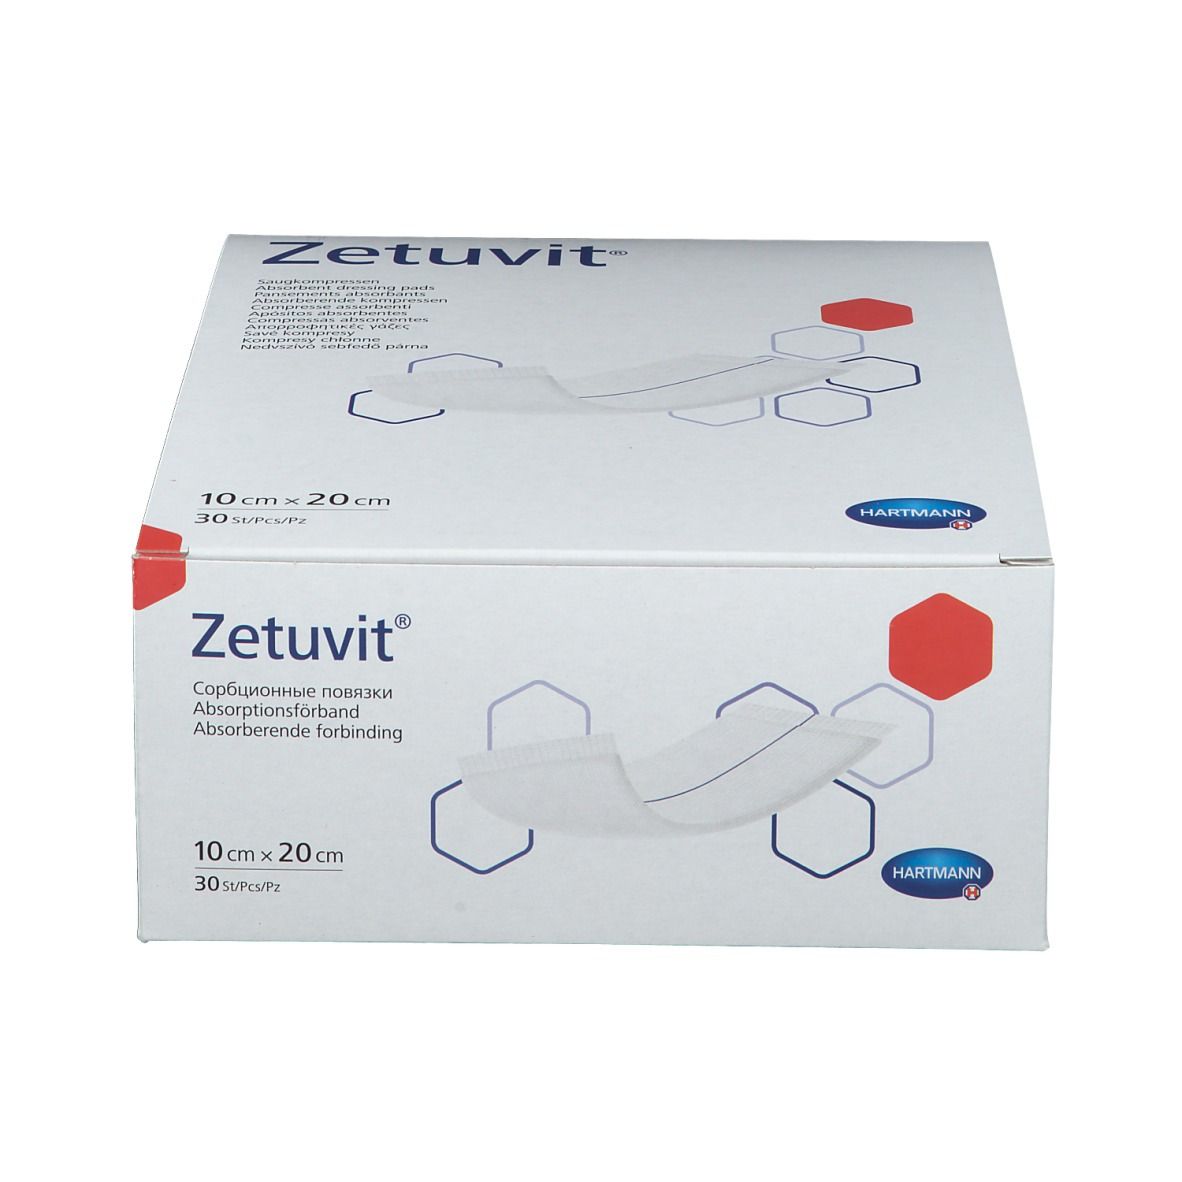 Zetuvit® Saugkompresse unsteril 10 x 20 cm